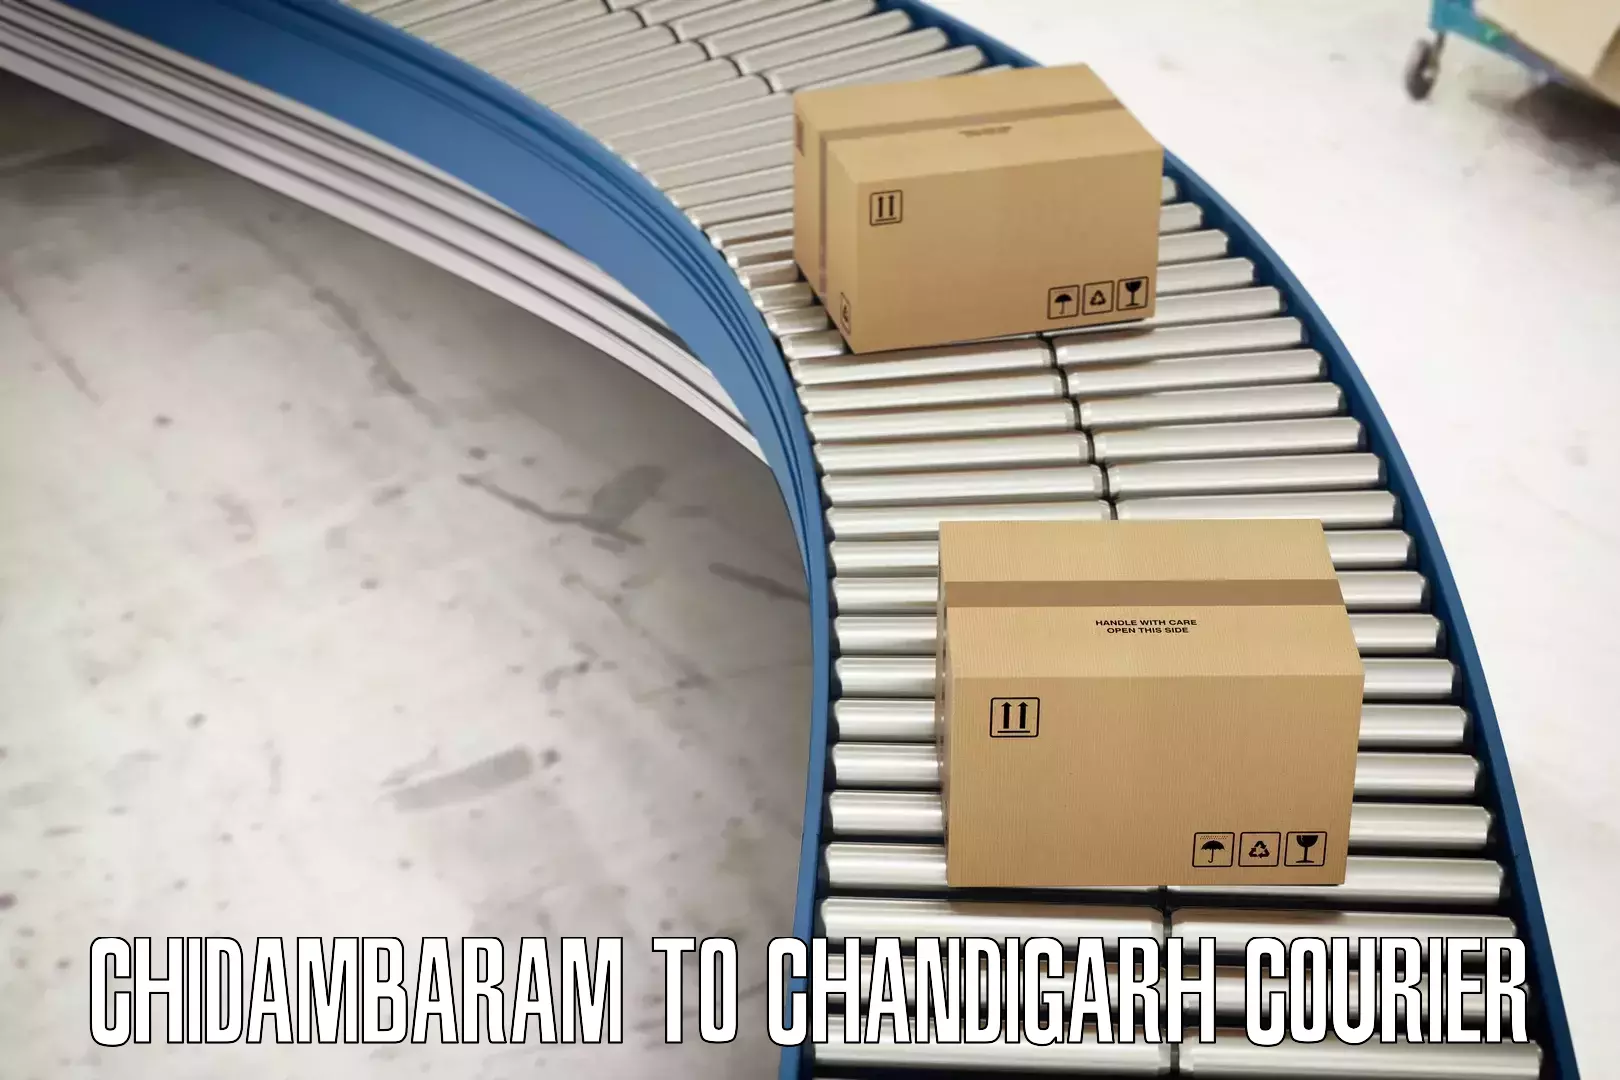 Special handling courier Chidambaram to Chandigarh